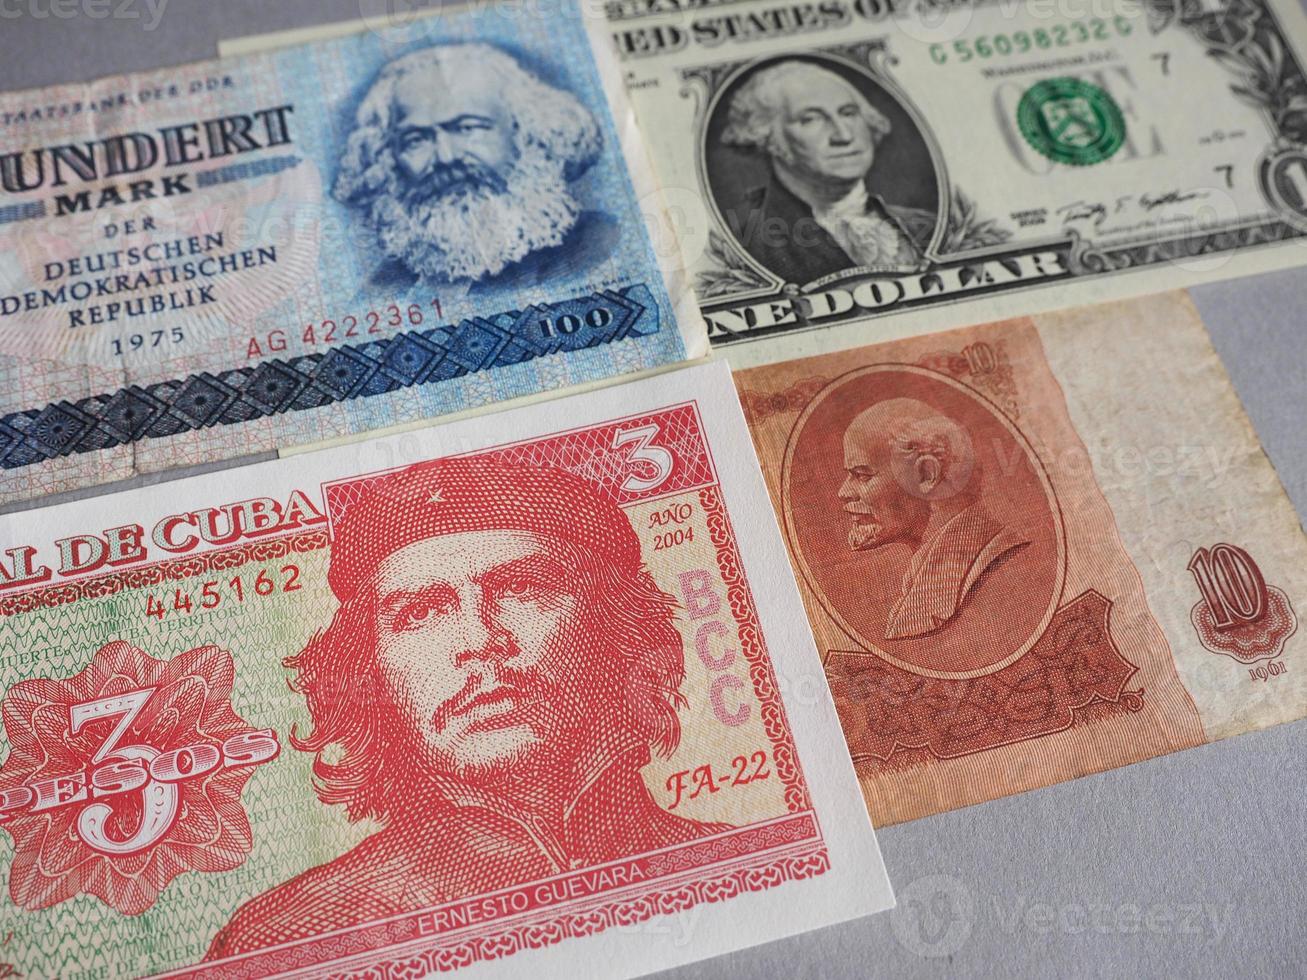 Marx, Washington, Che Guevara et Lénine sur les billets de banque photo